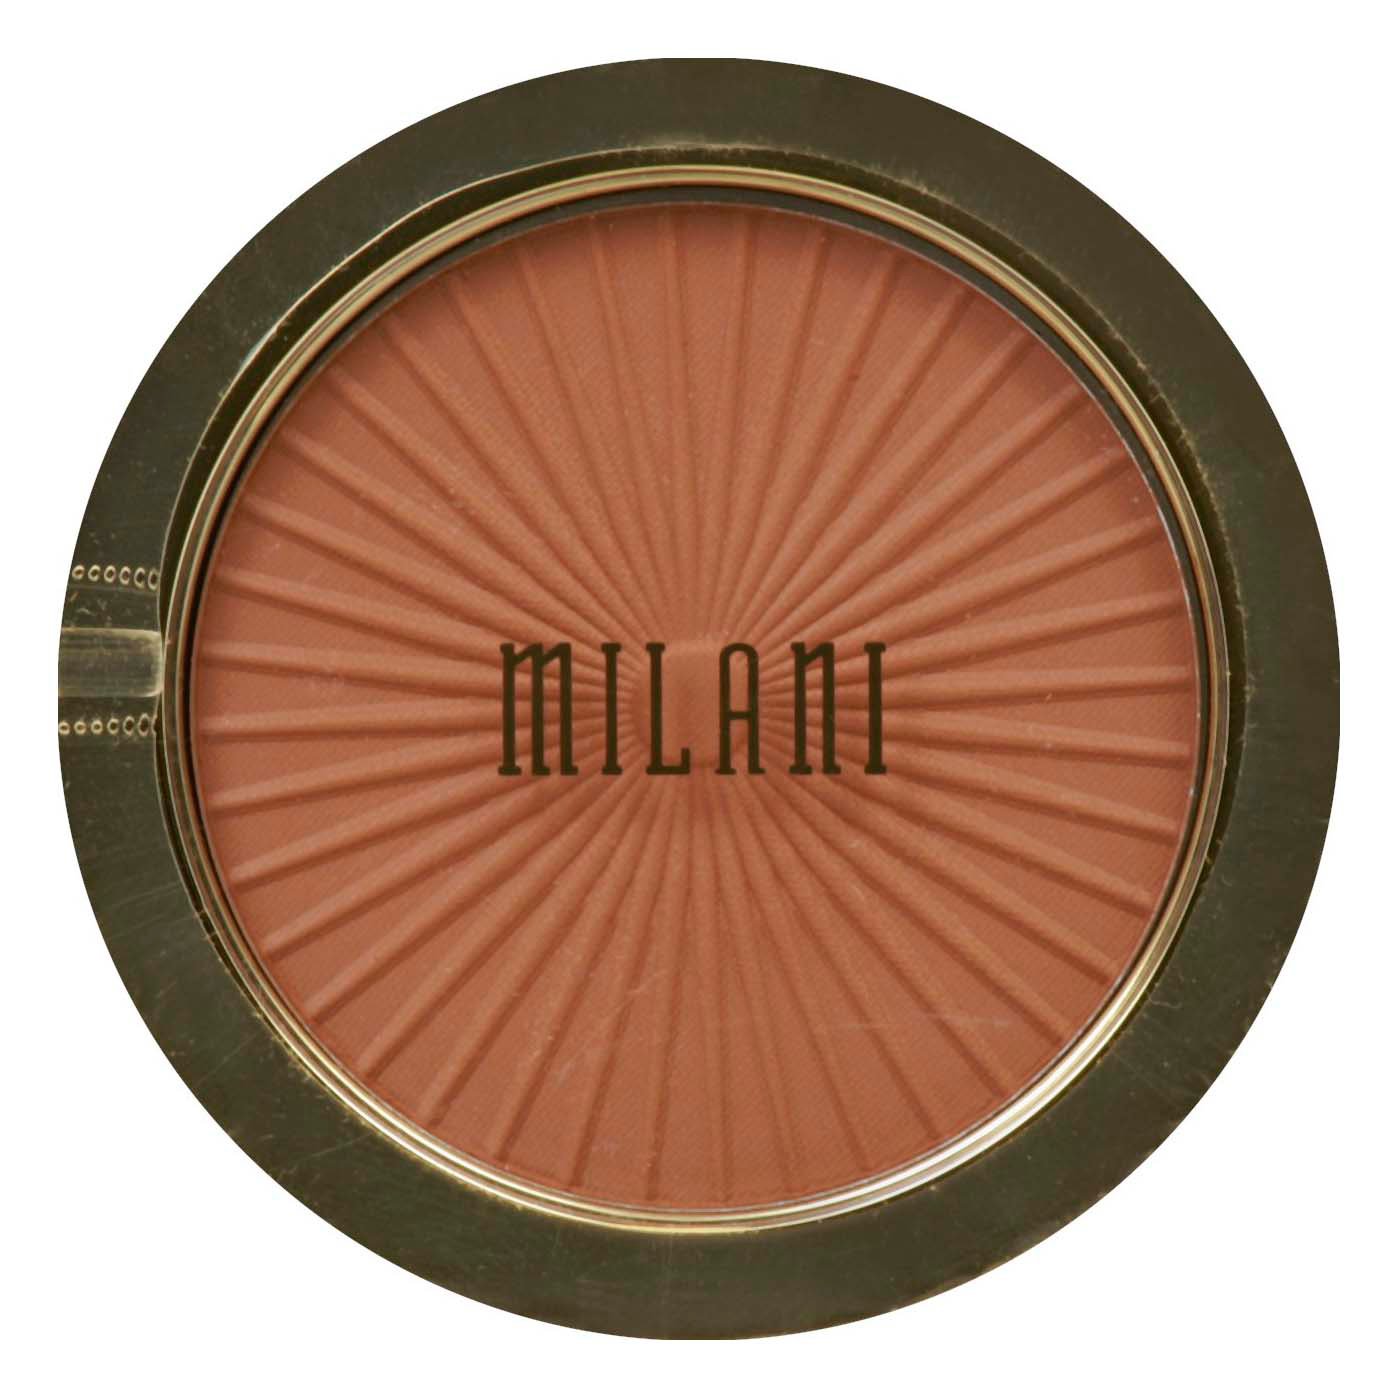 Milani Silky Matte Bronzer Powder Sun Tan Shop Bronzers & at H-E-B